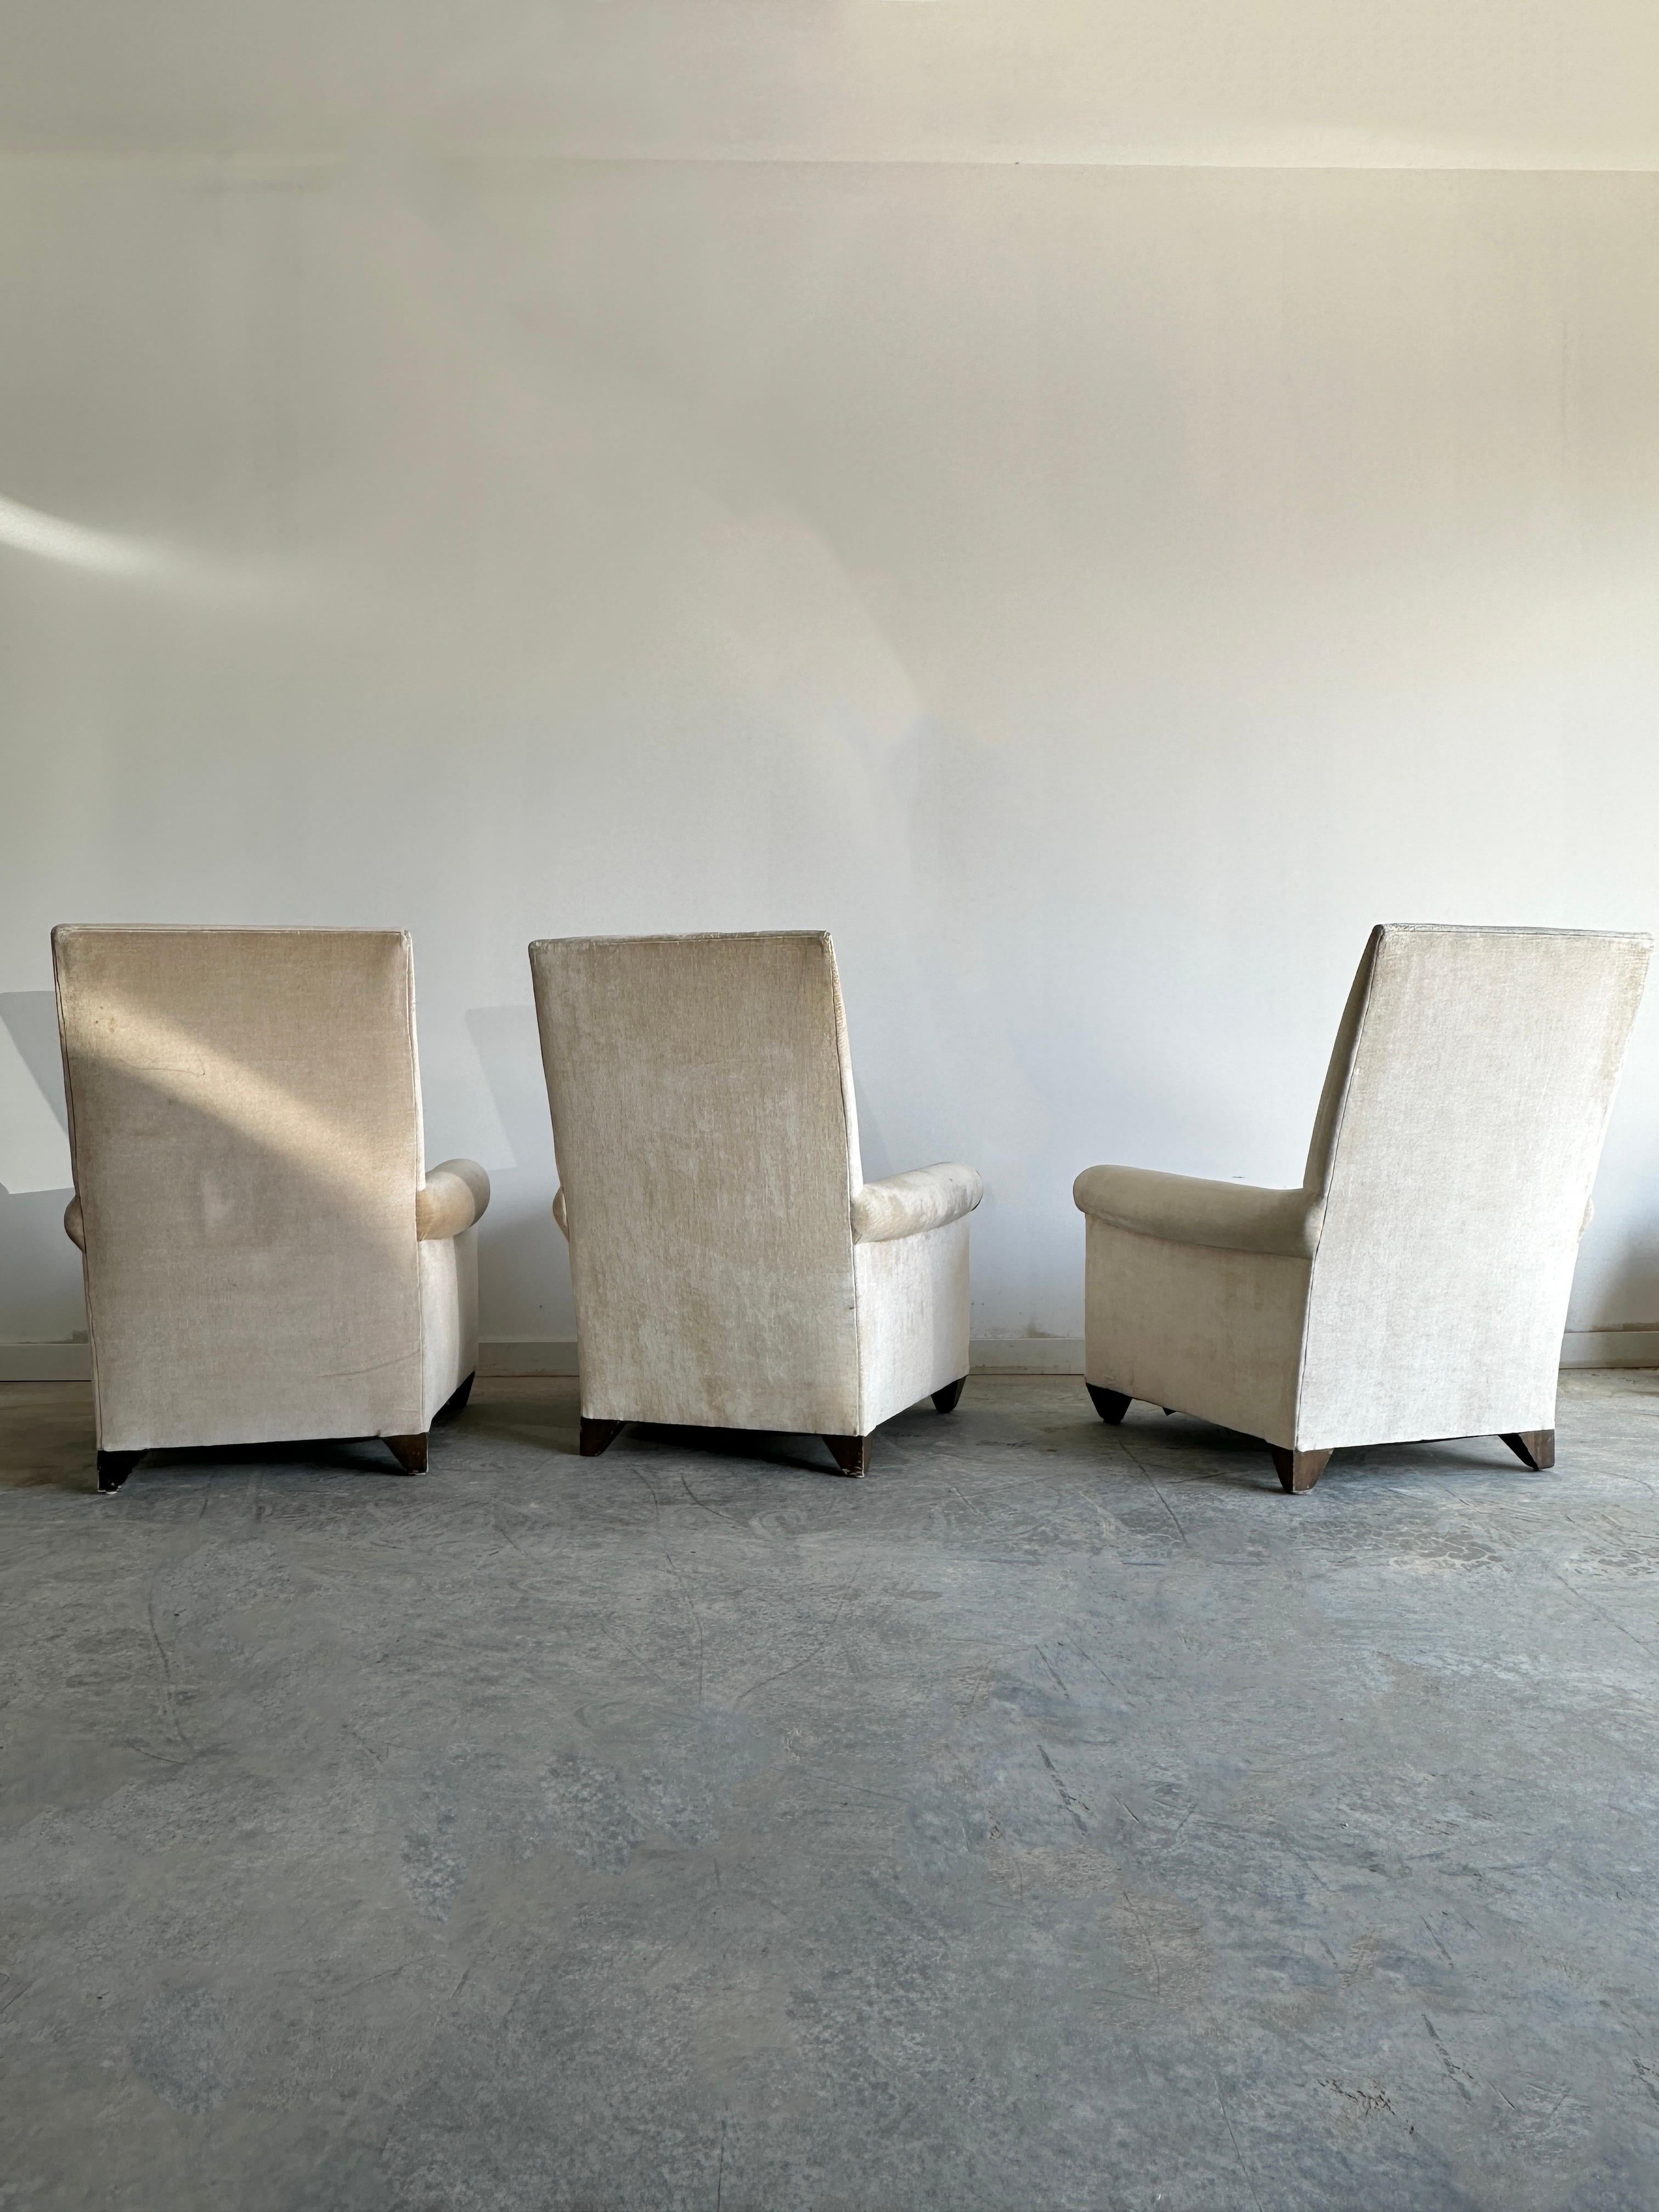 Drei elegante und sehr bequeme Sessel mit tiefen Polstern, hoher Rückenlehne und hochwertigem, strukturiertem Samtstoff. Die Stühle haben ein schlichtes und modernes Design, das den Stil ihres Schöpfers Angelo Donghia widerspiegelt, der für seine